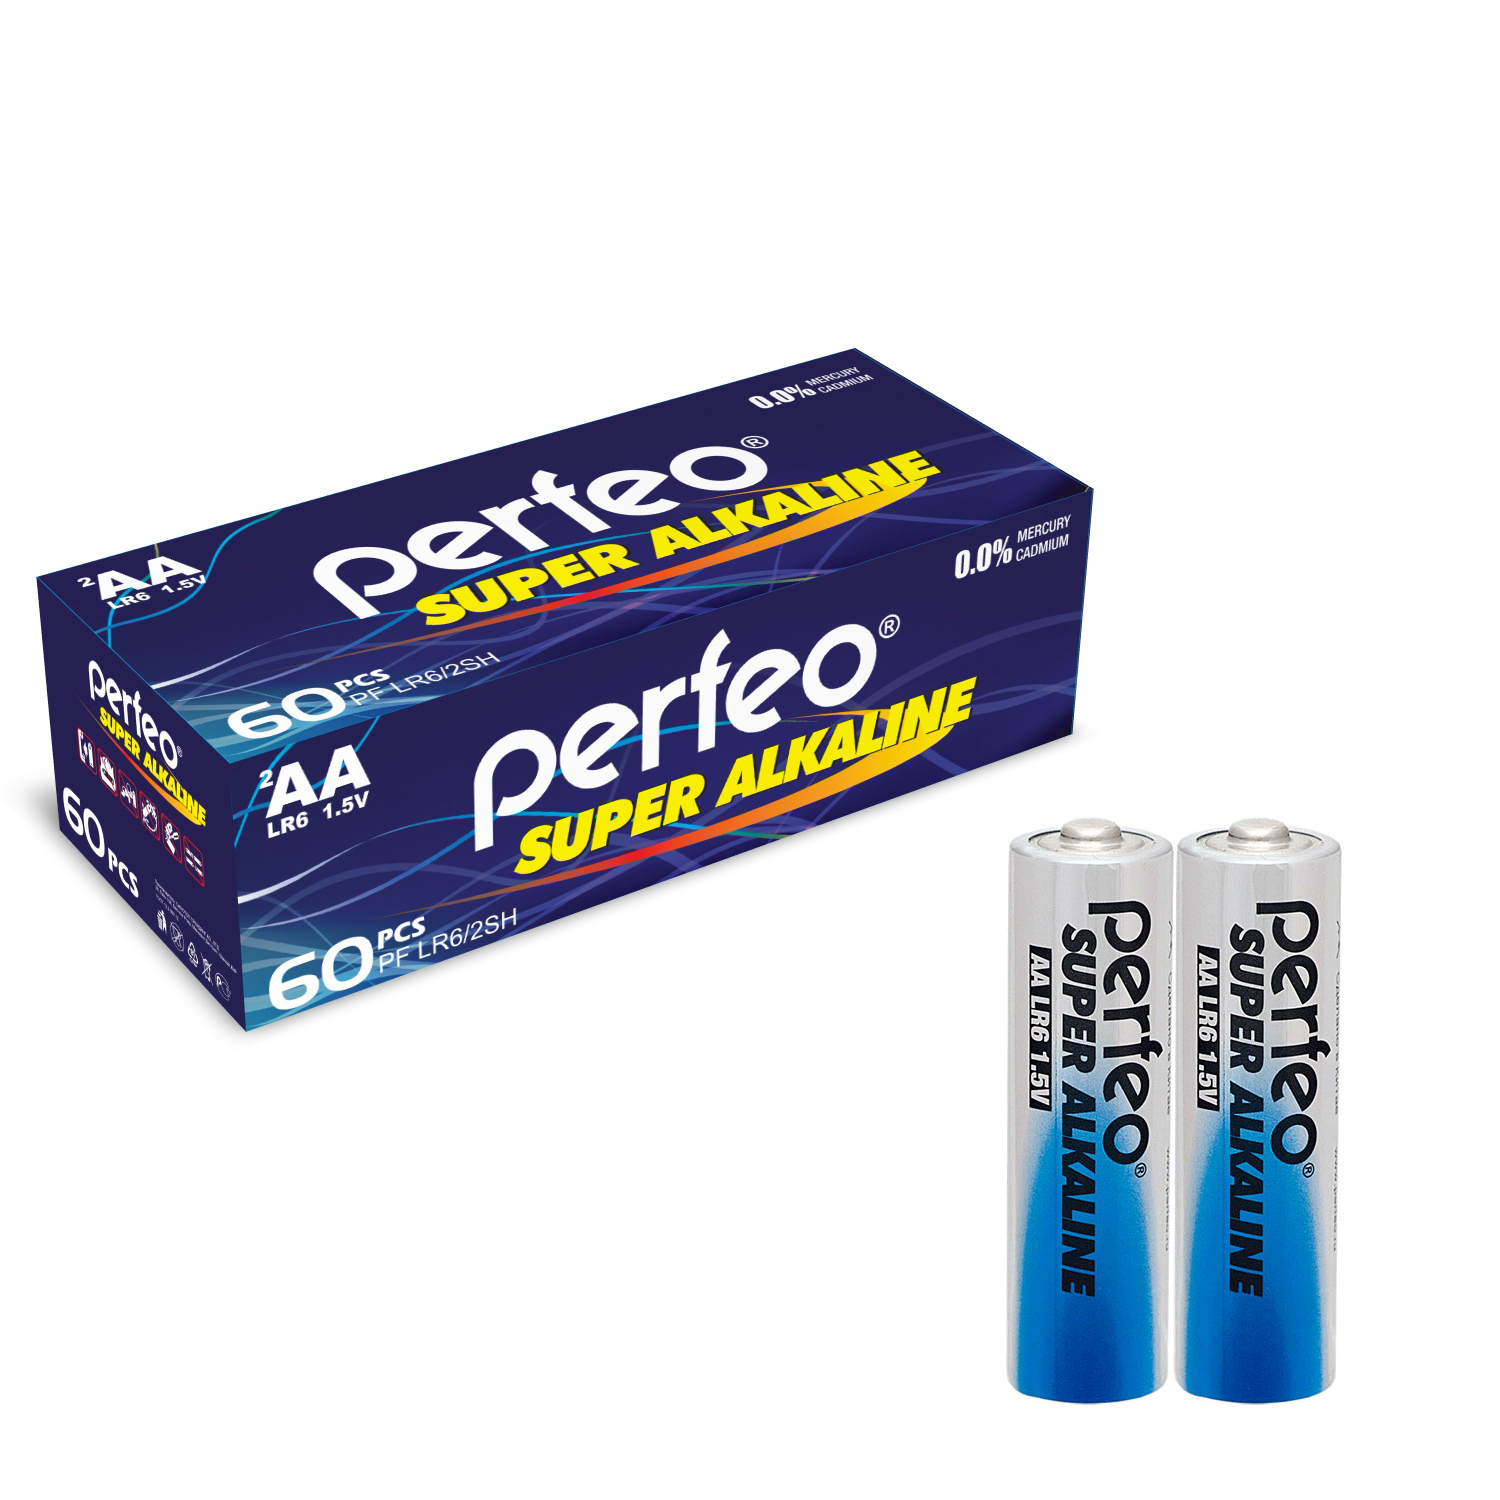 Батарейка Perfeo LR6/2SH Super Alkaline 60 шт батарейки perfeo super alkaline ааа lr03 отрывные 10 шт